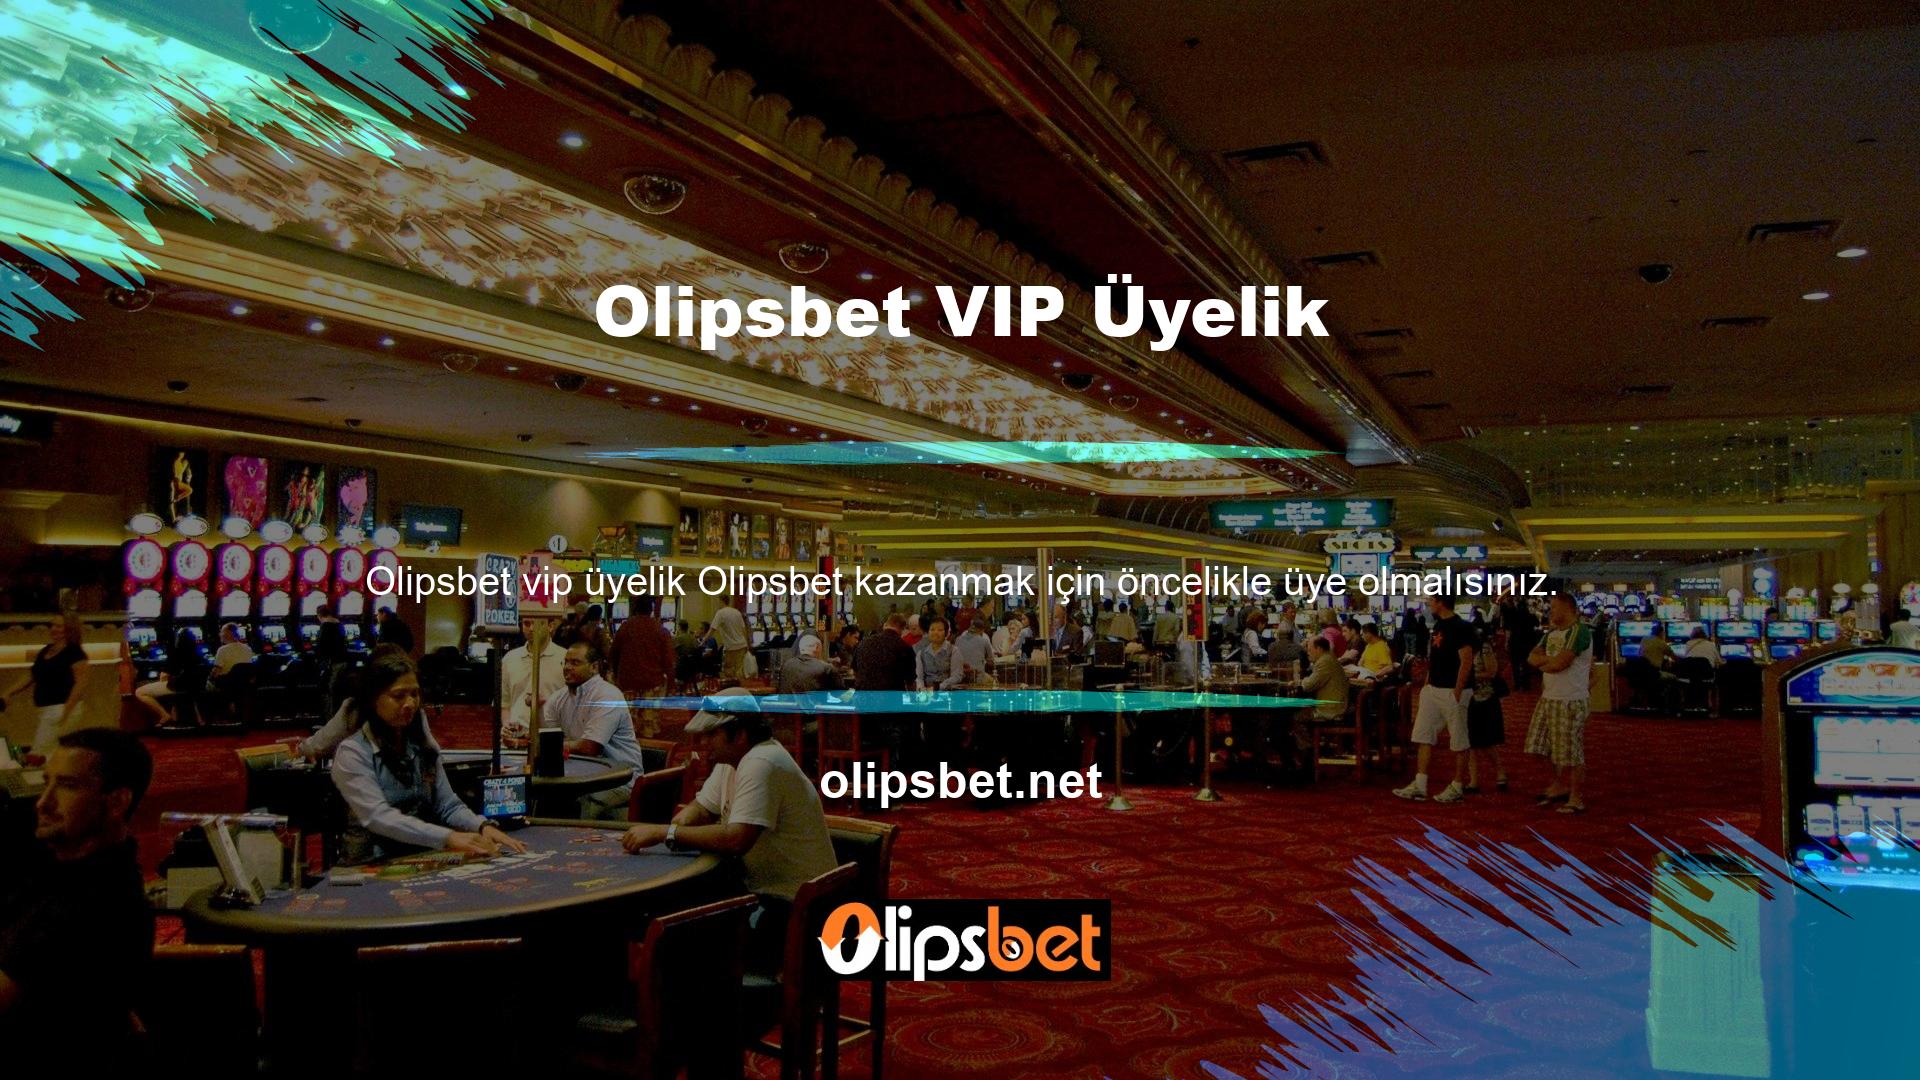 Olipsbet VIP üye bahis sitesinde kayıt işlemini tamamlayan kullanıcıların bir oyun hesabına yatırım yapmaları gerekmektedir